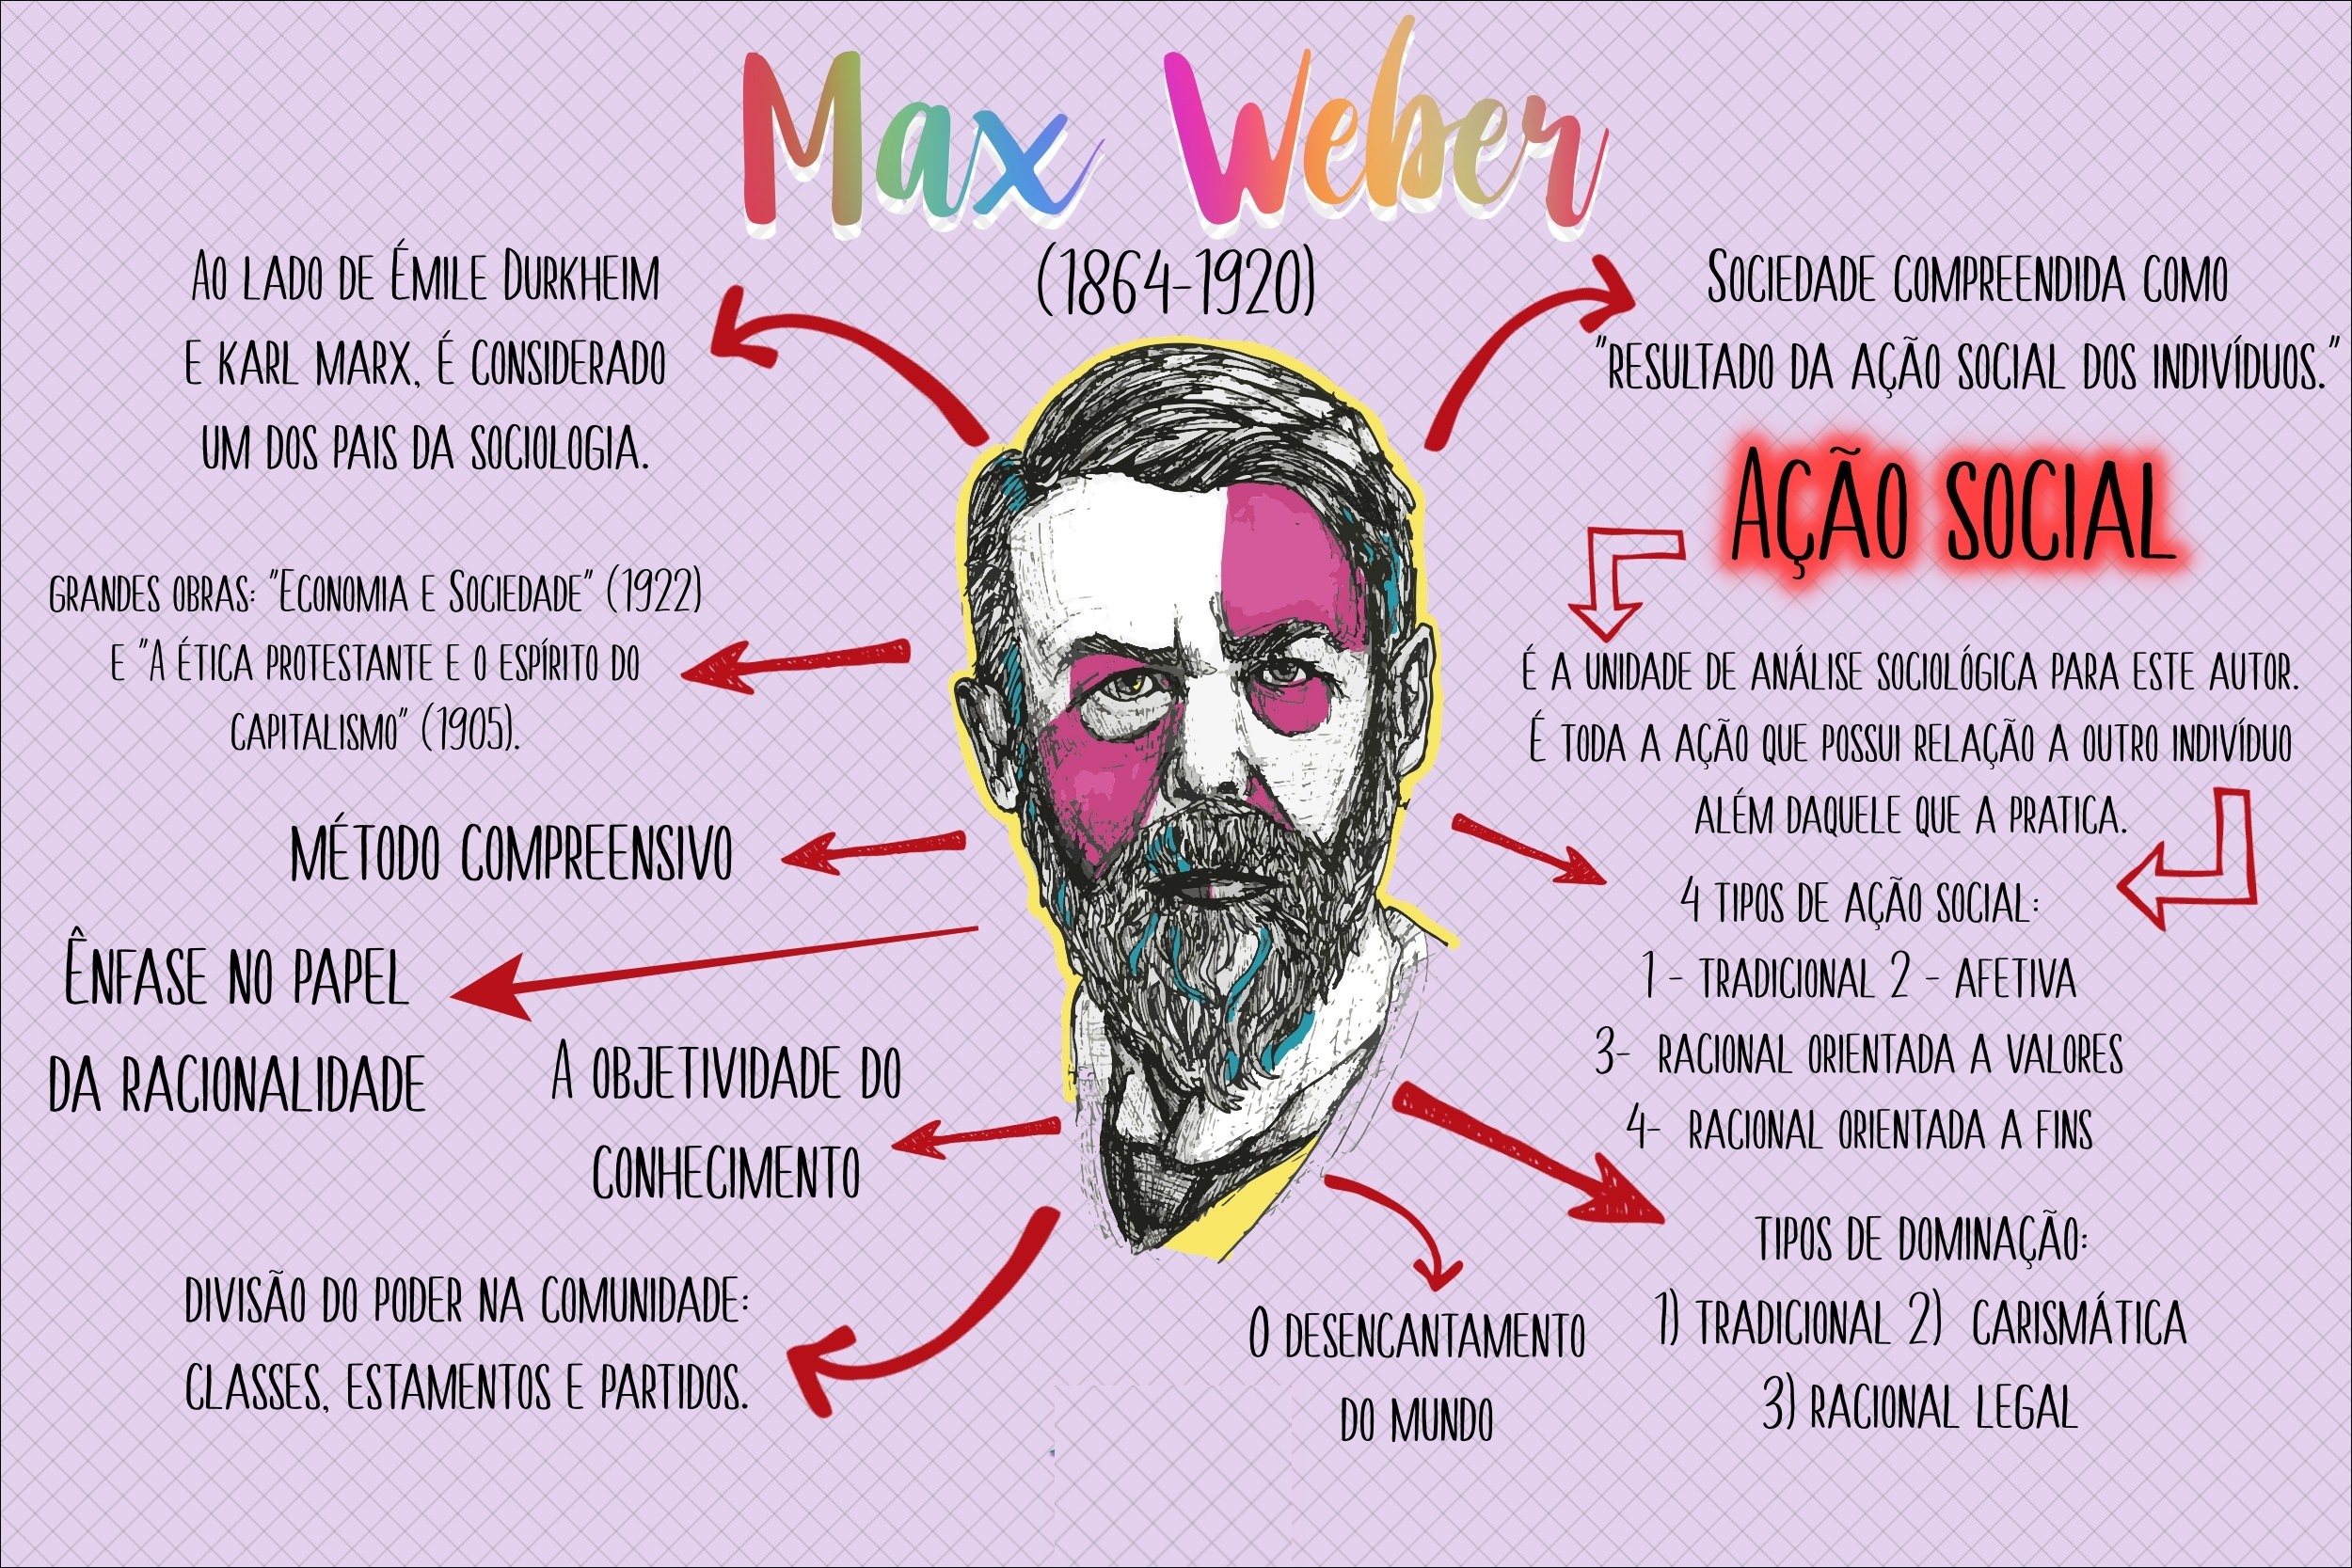 Mapa mental com Max Weber no centro, ramificando-se para Émile Durkheim e Karl Marx